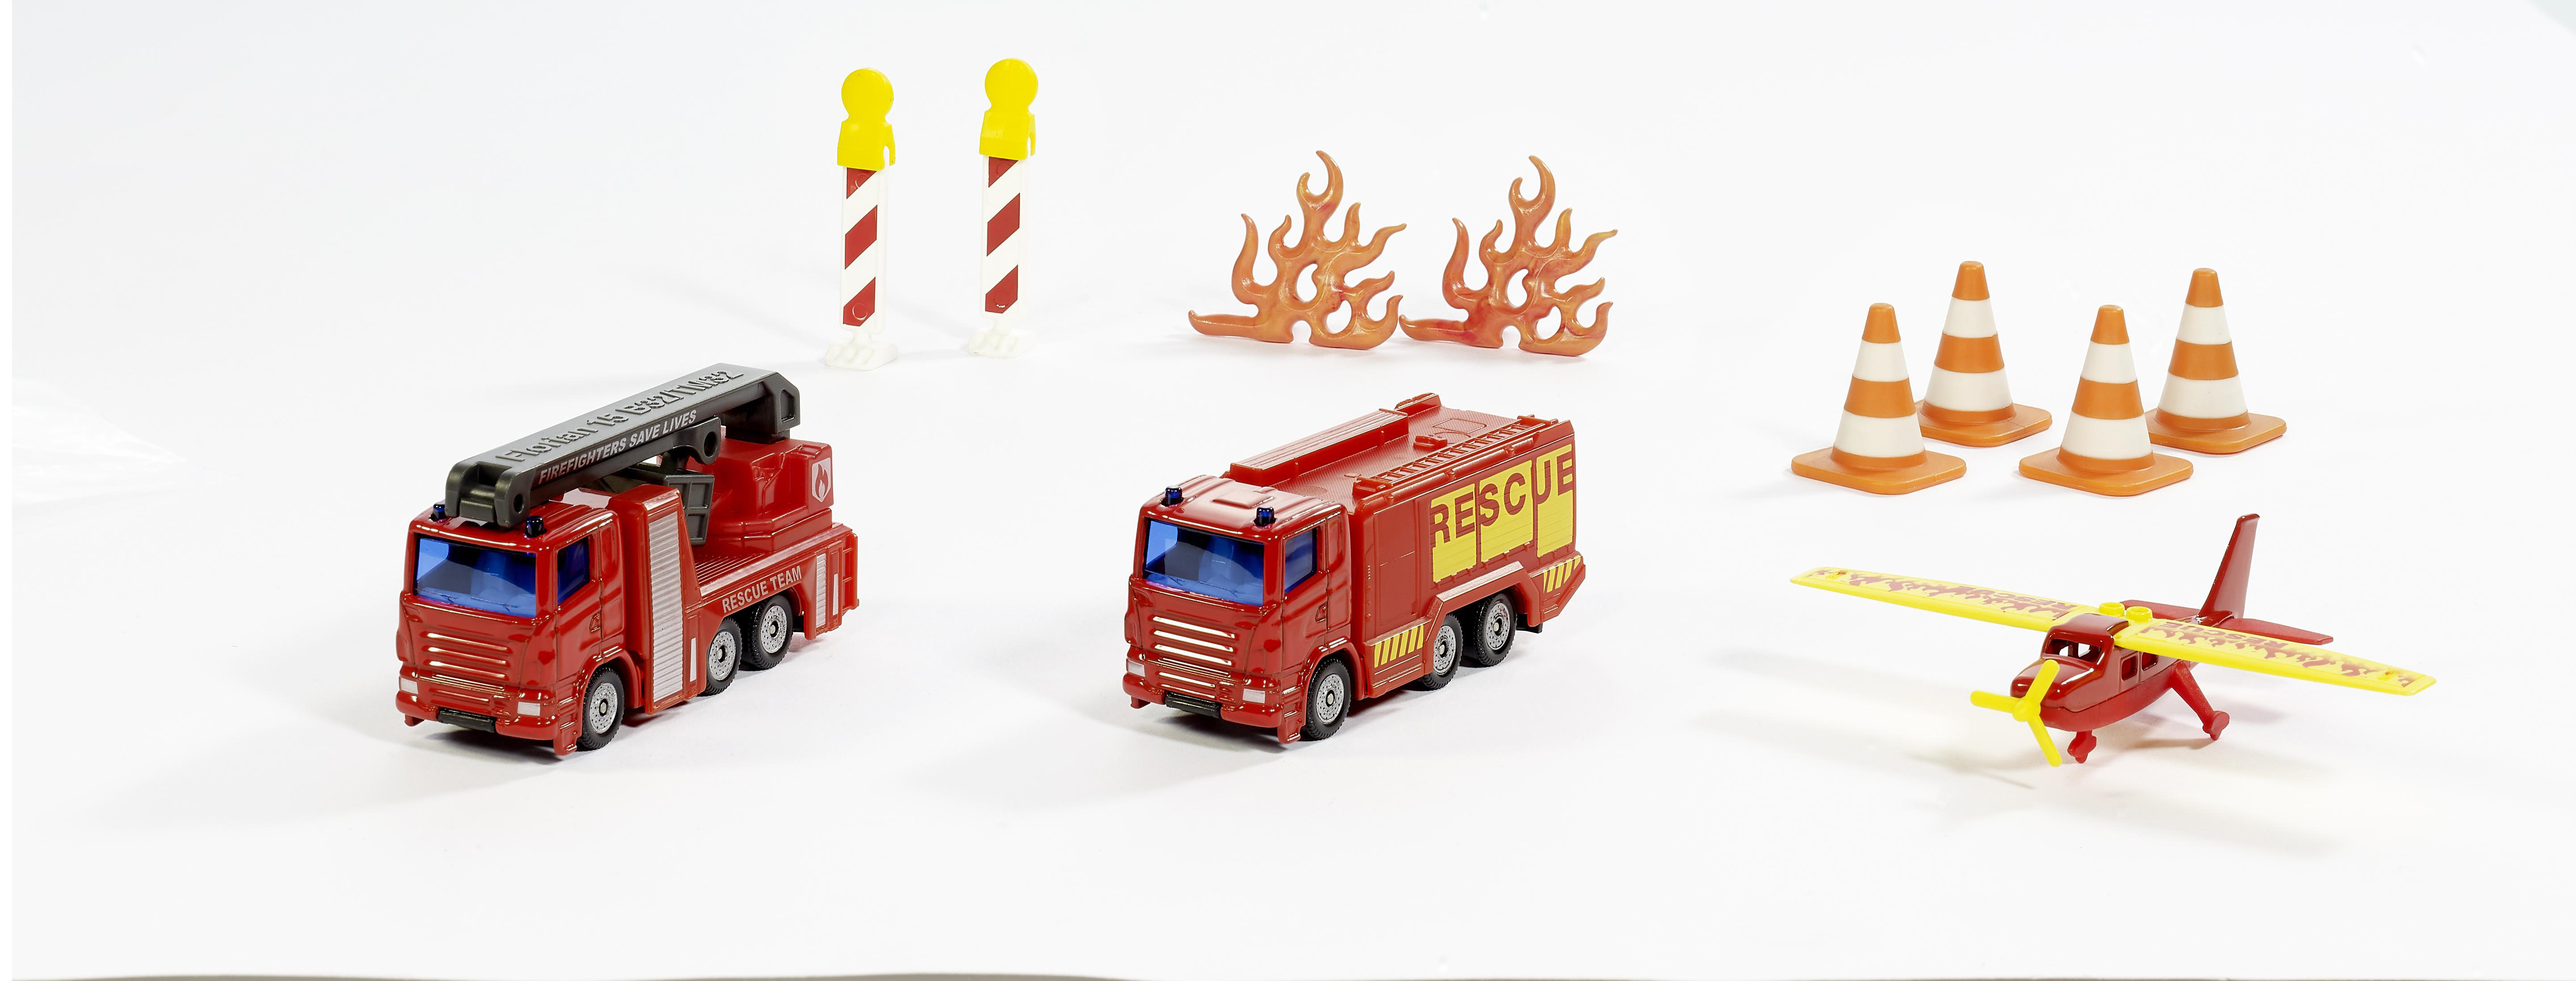 SIKU 6330 Geschenkset Feuerwehr Spielzeugmodellfahrzeug, Mehrfarbig